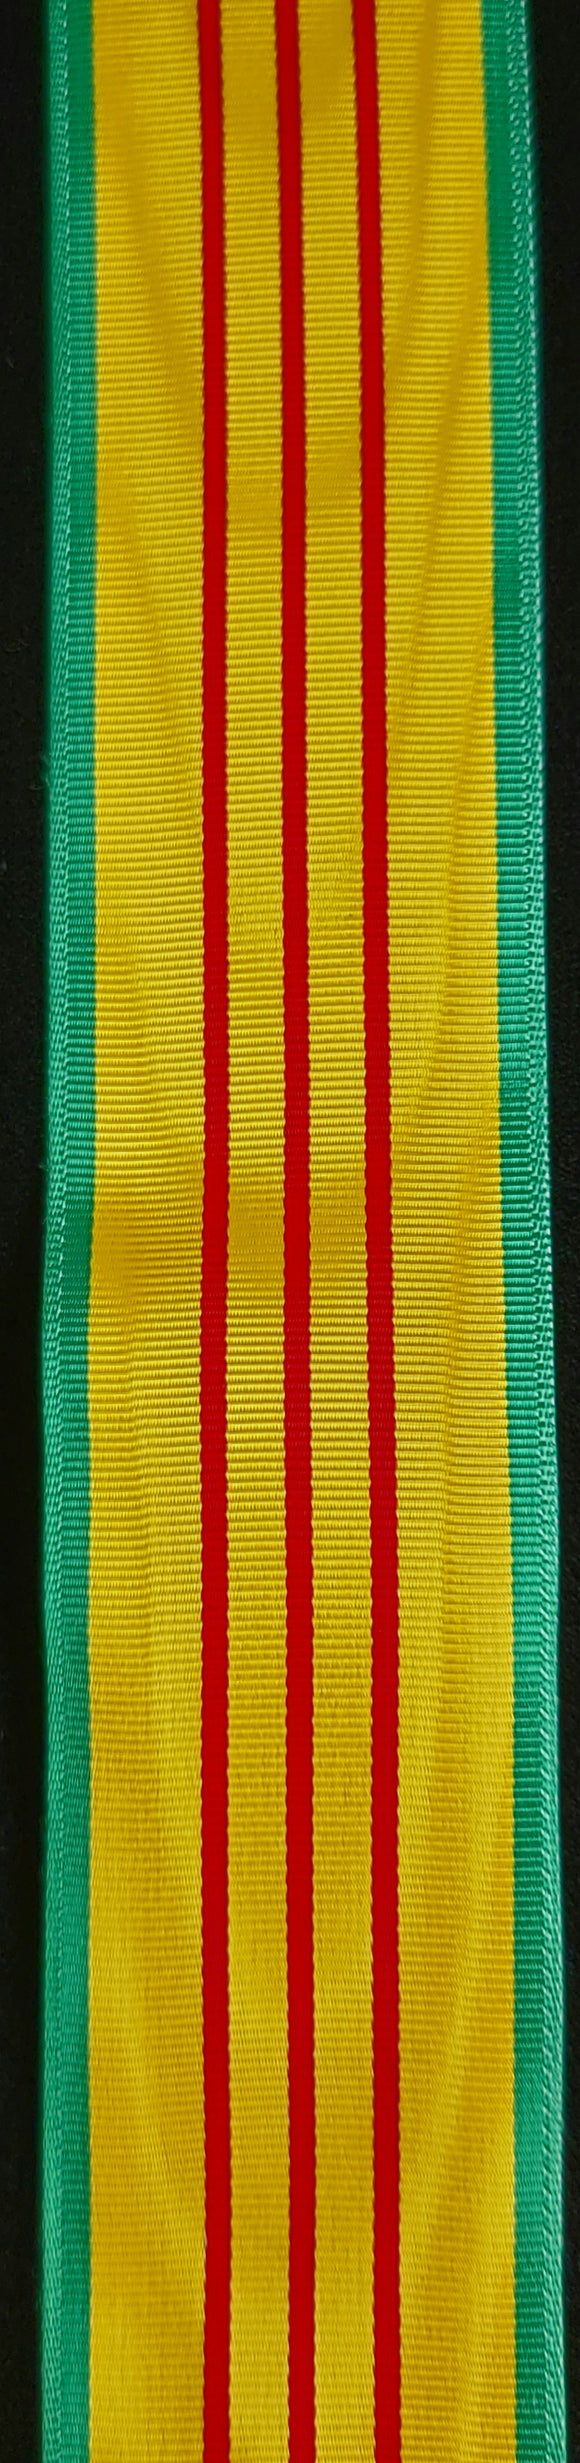 Ribbon, US Vietnam Service Medal